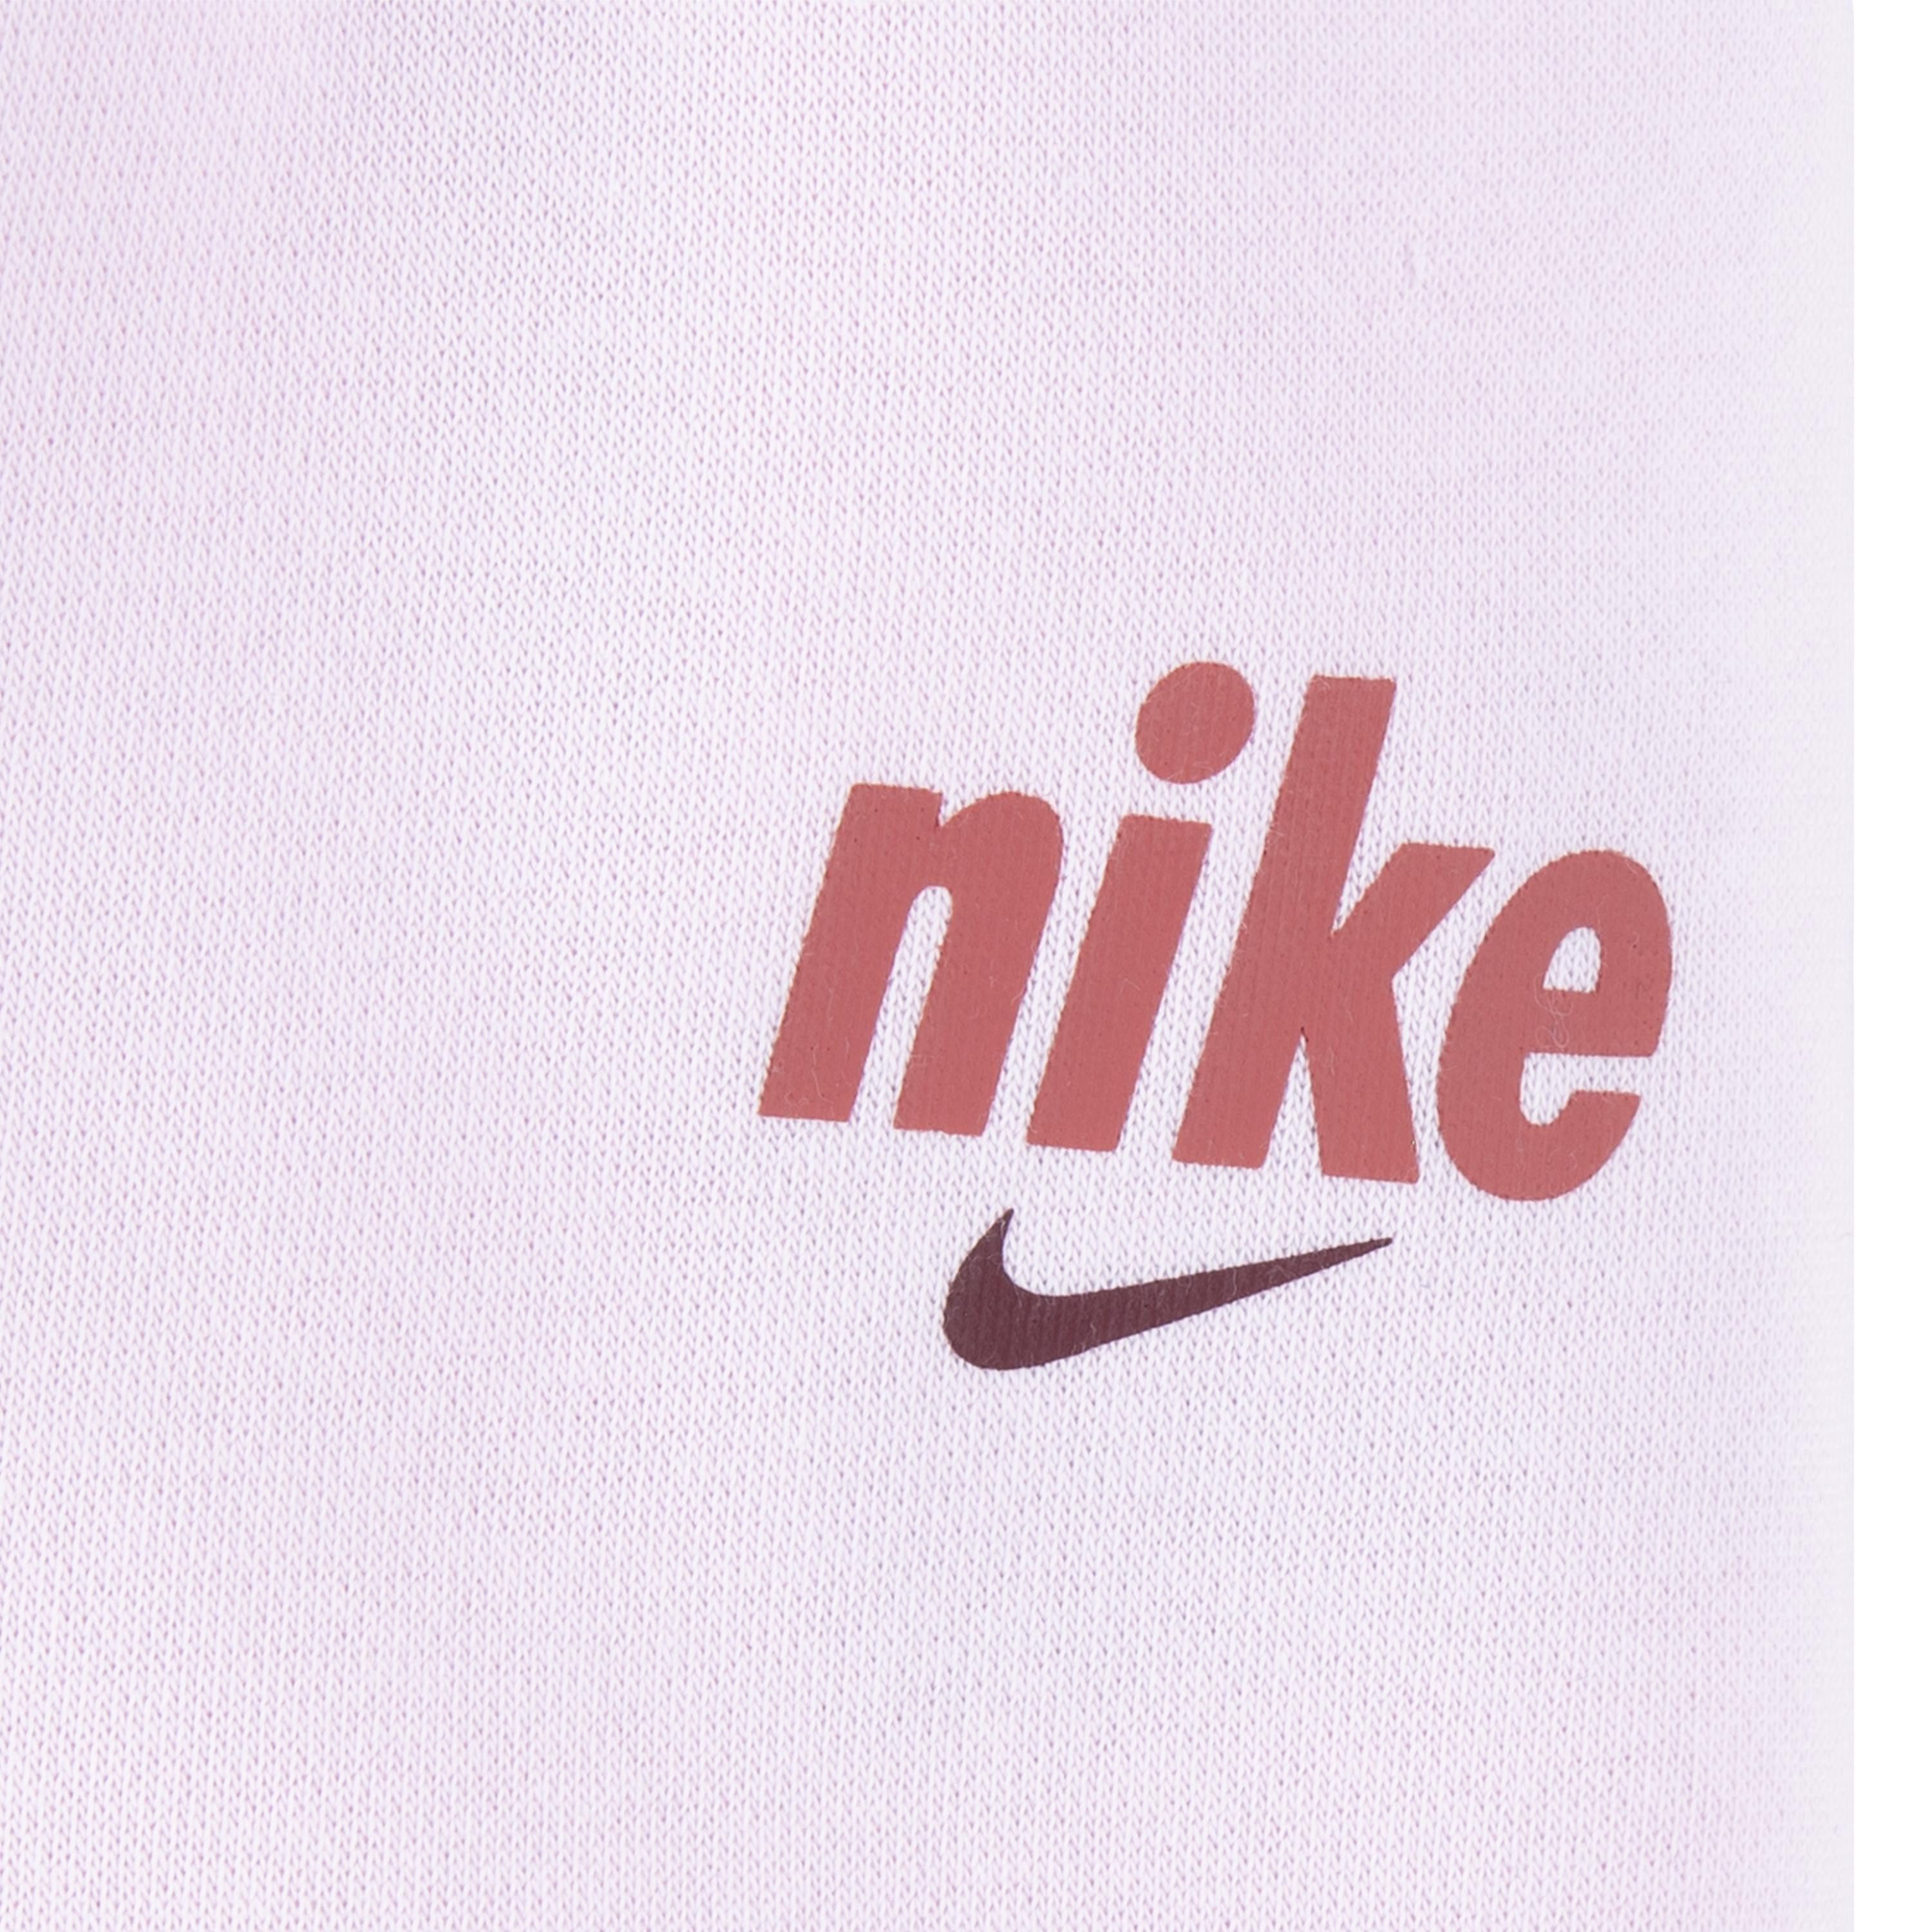 Nike Sportswear Joggingpak